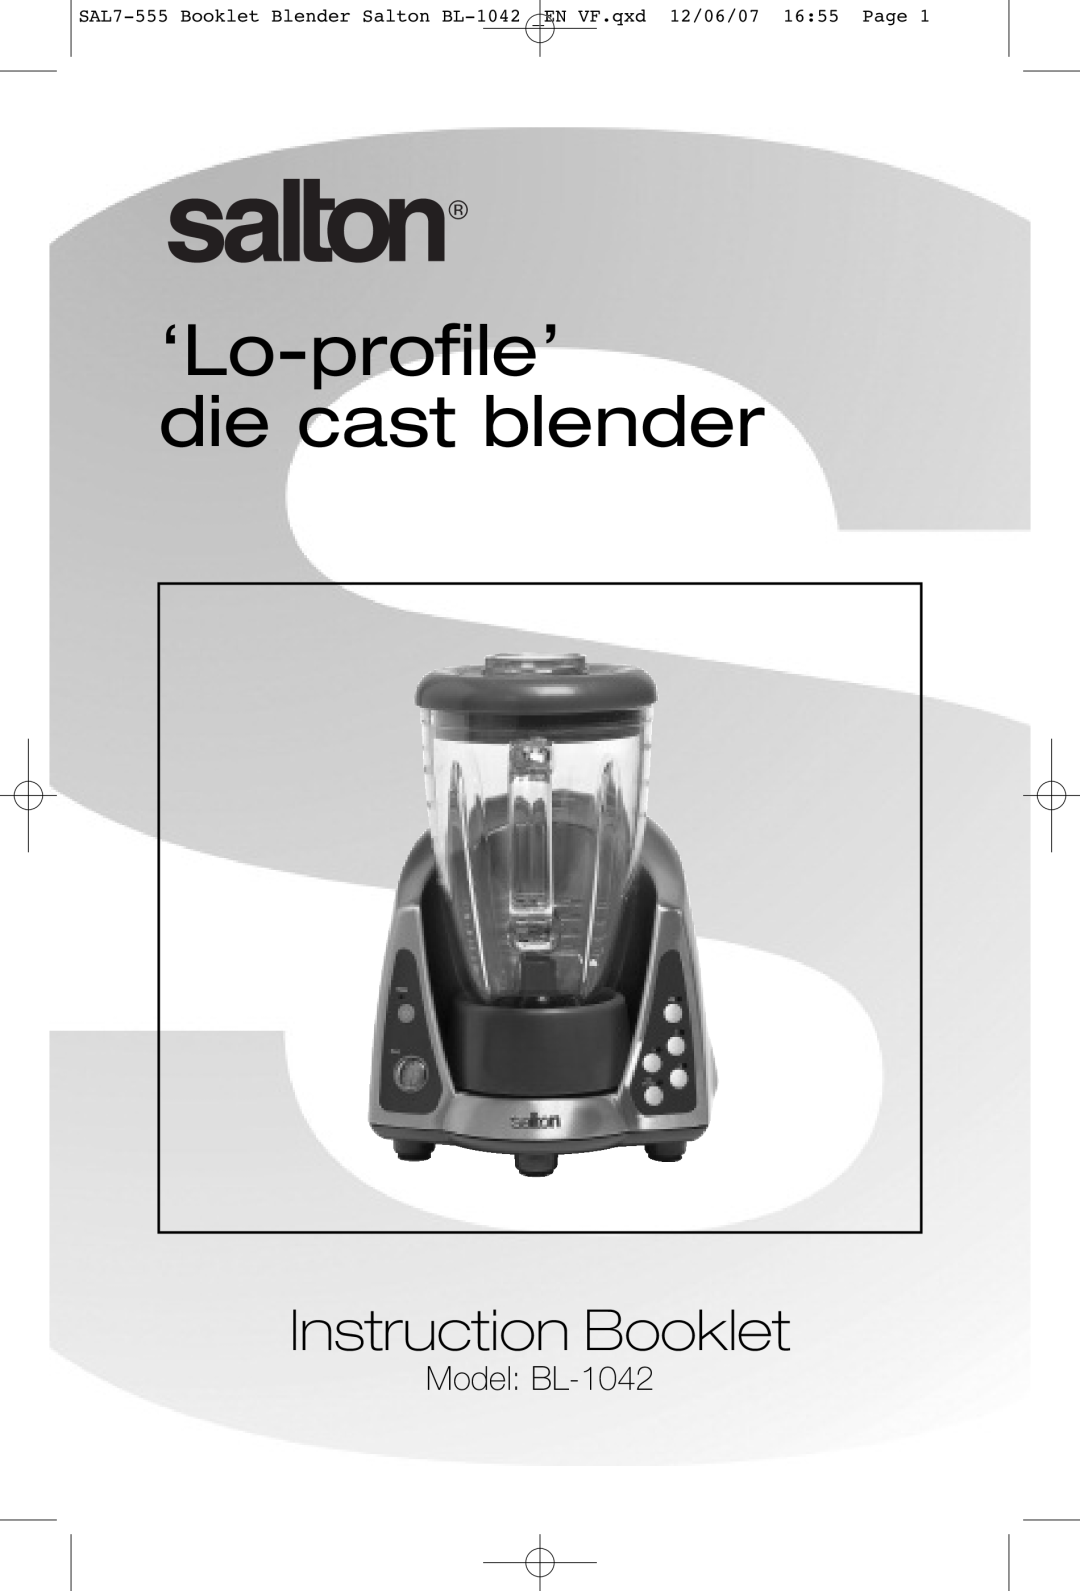 Salton manual Model BL-1042, ‘Lo-profile’ die cast blender, Instruction Booklet 